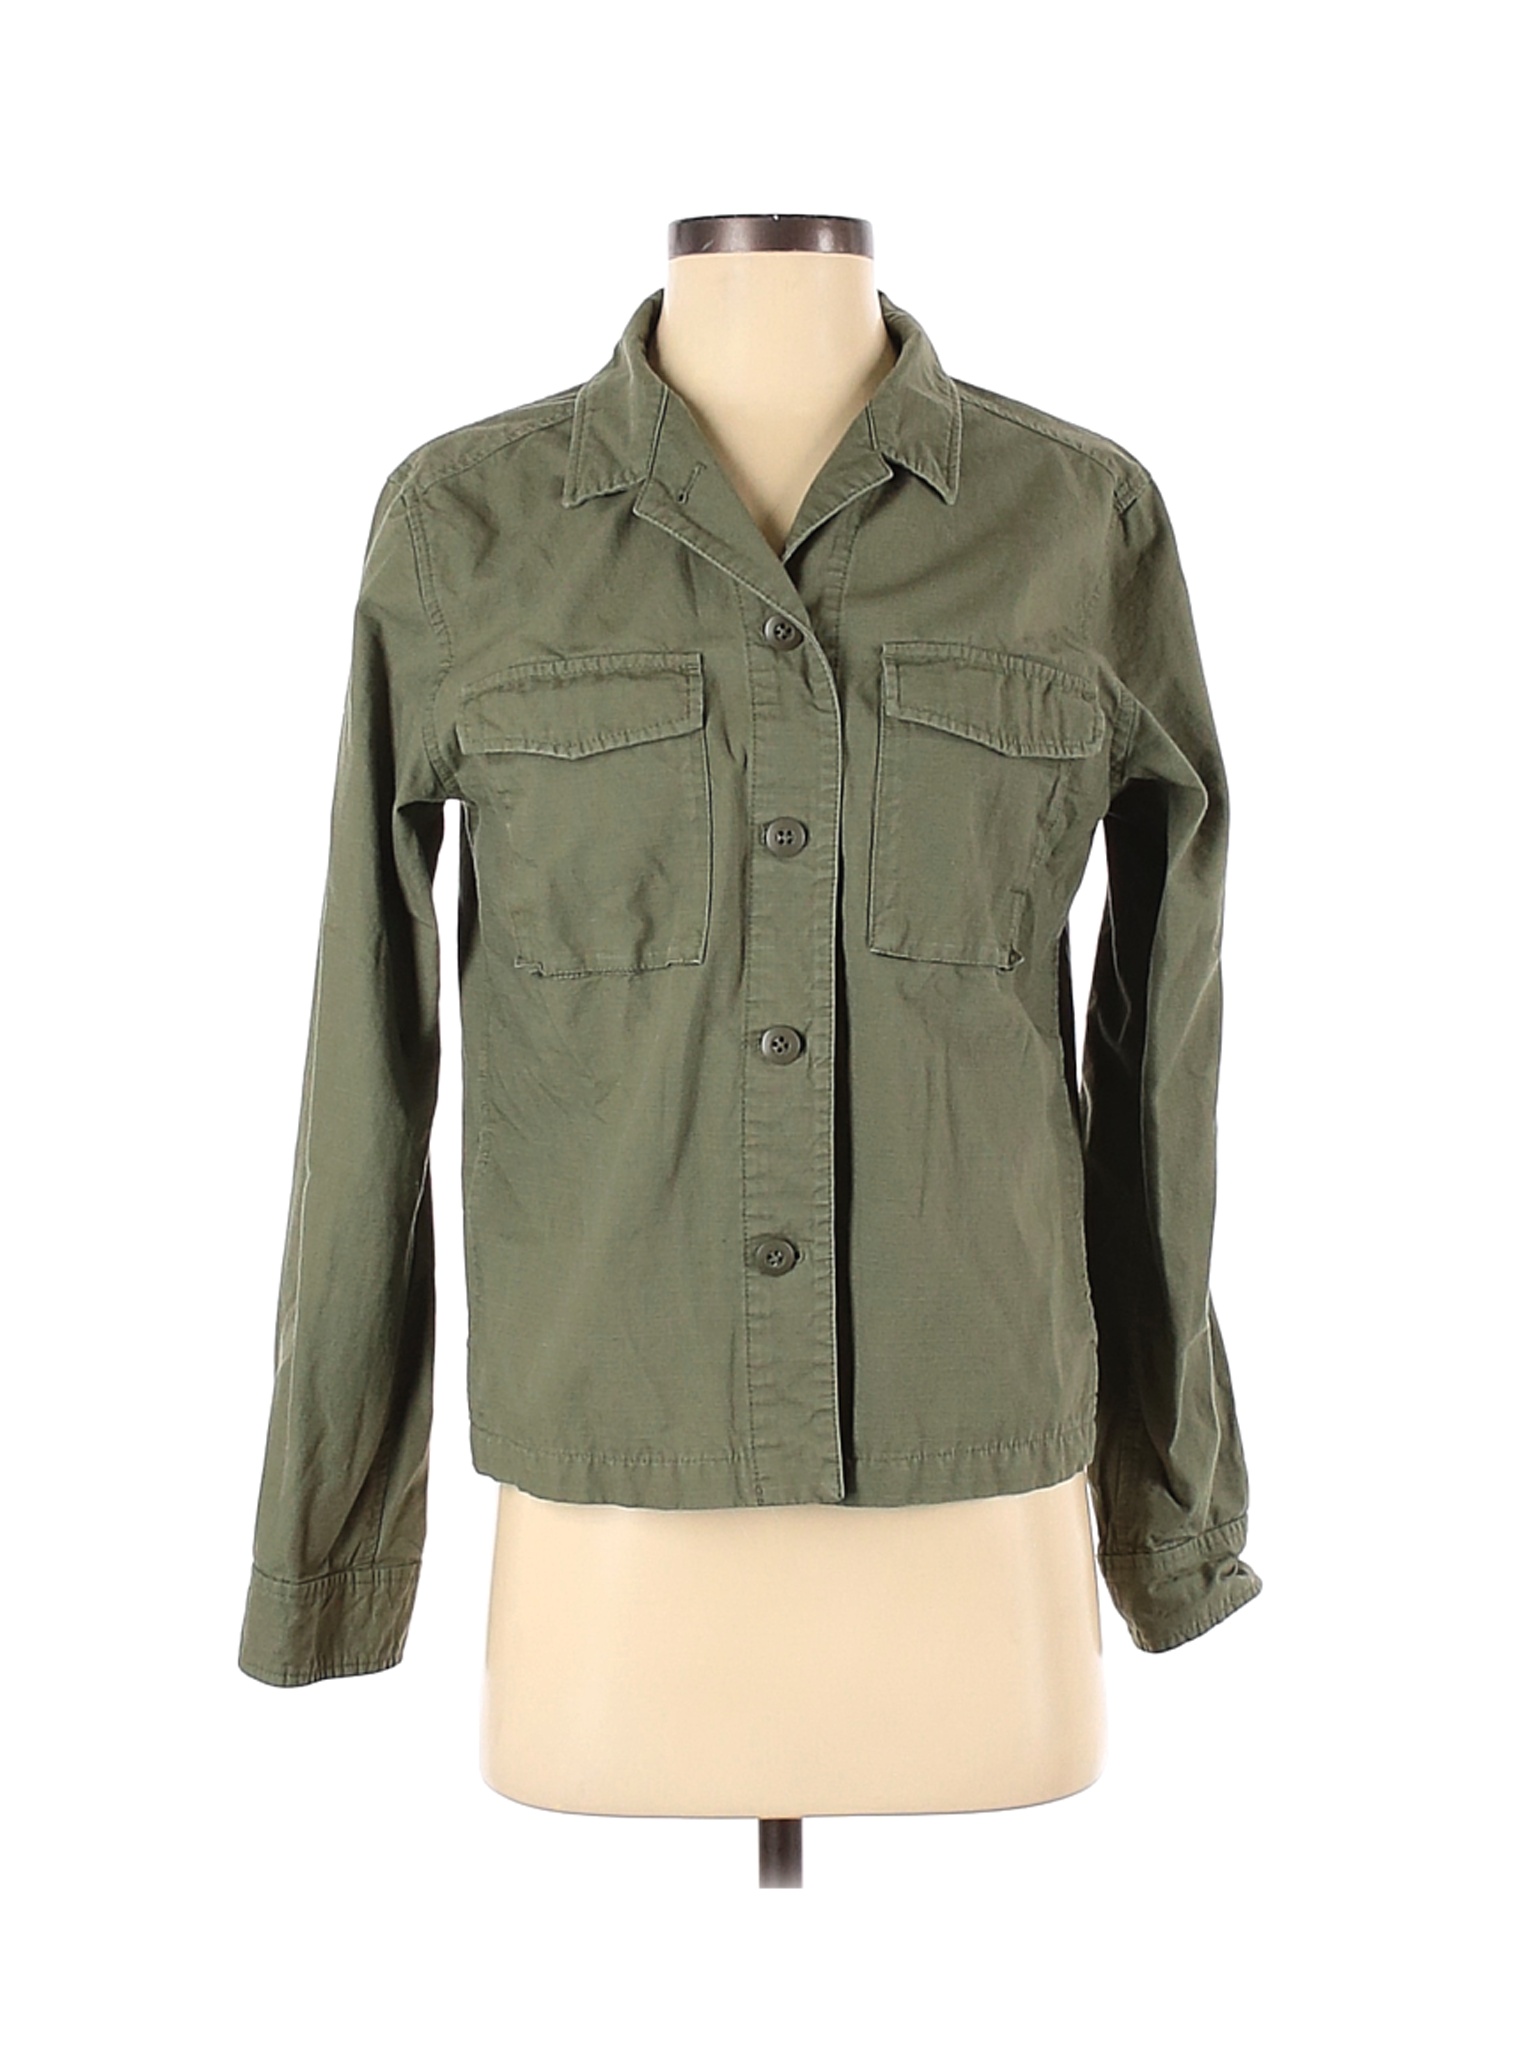 Uniqlo Women Green Jacket S | eBay